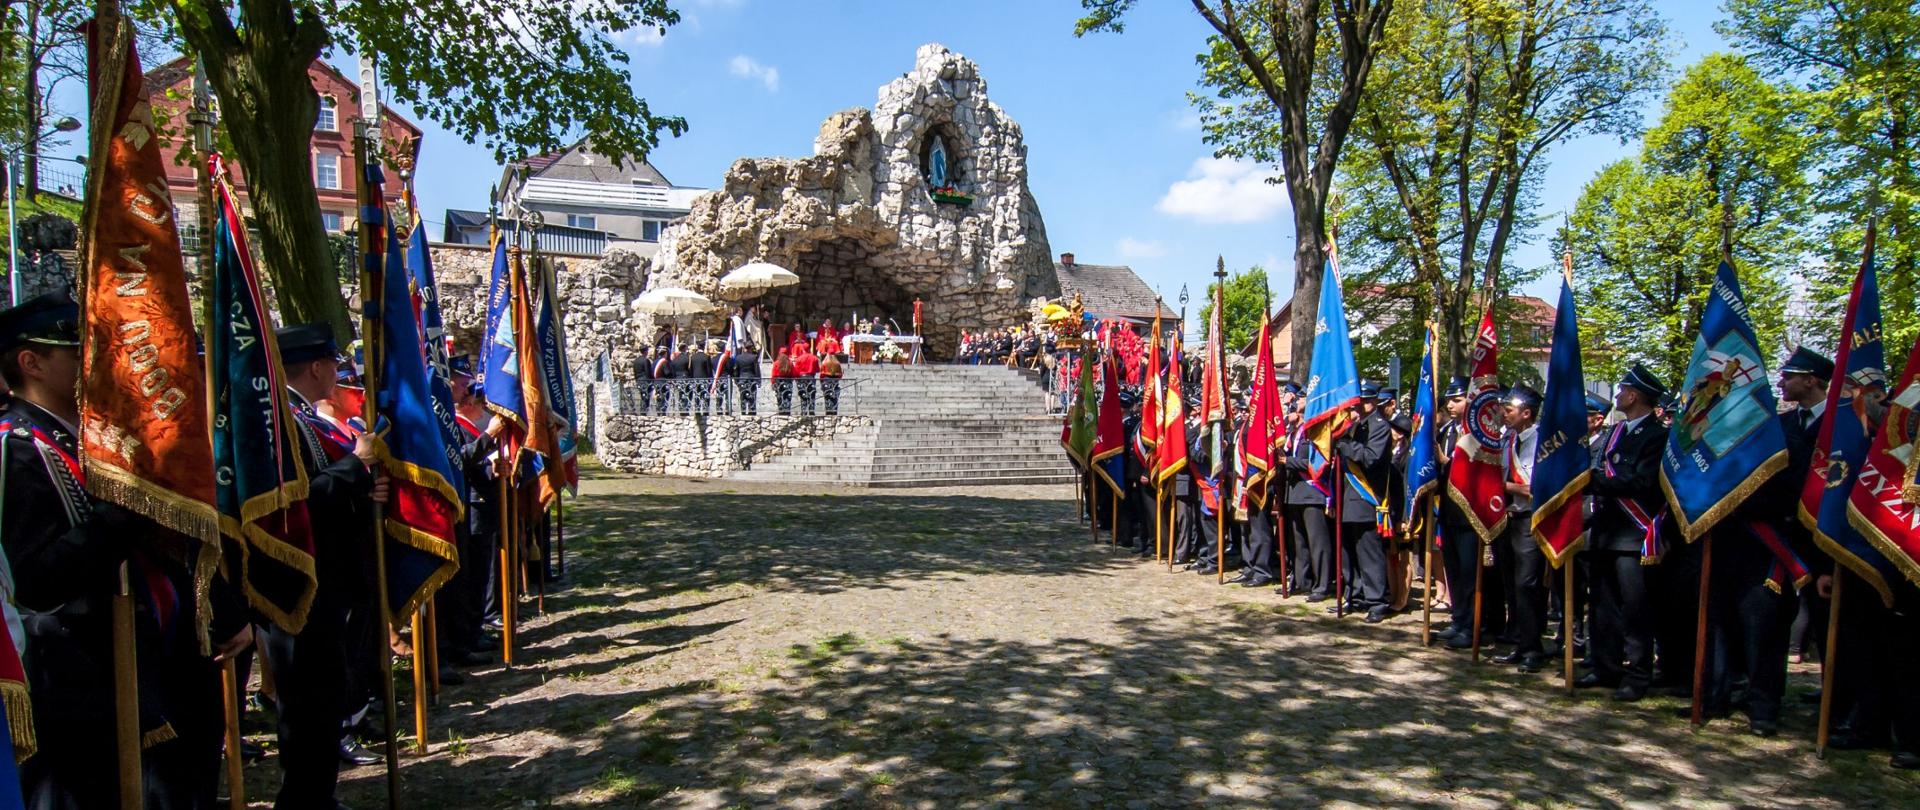 Pielgrzymka strażaków na Górę Świętej Anny. Strażacy w mundurach wyjściowych stoją ze sztandarami przed grotą na Górze Świętej Anny.